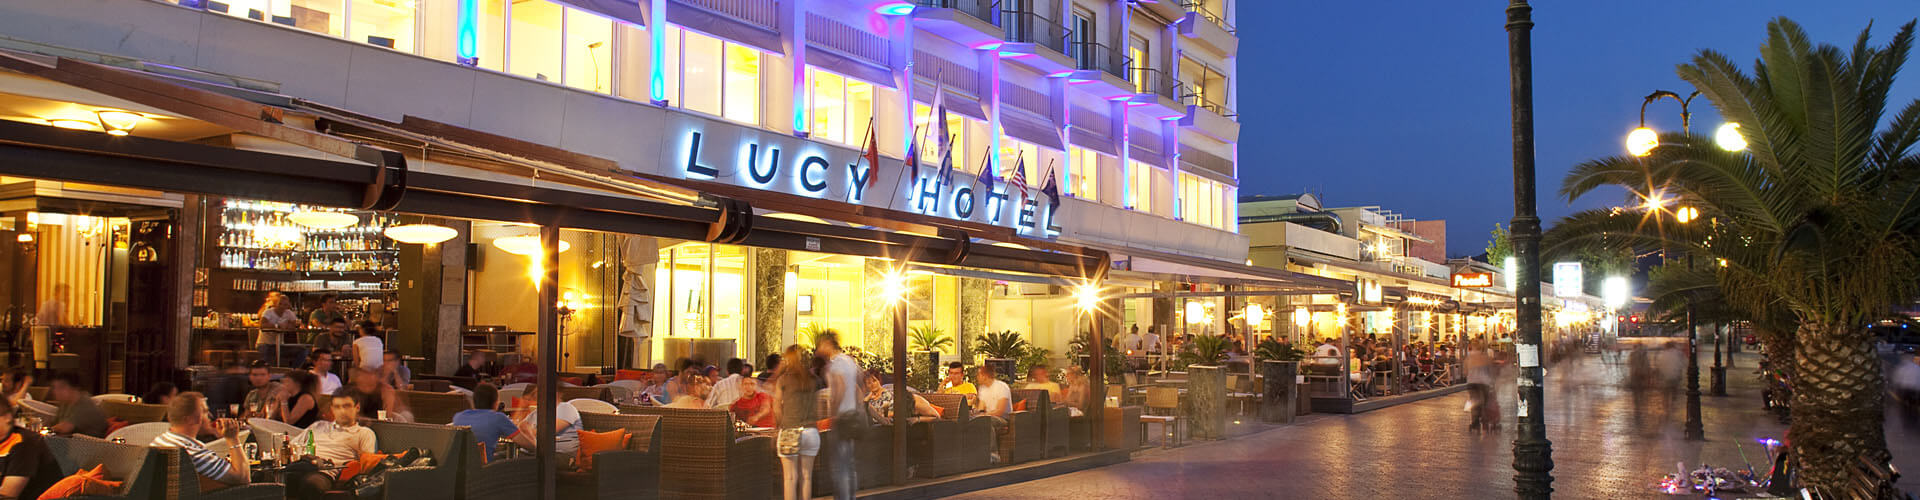 εικόνα Ξενοδοχείο Lucy Hotel Χαλκίδα εύβοια